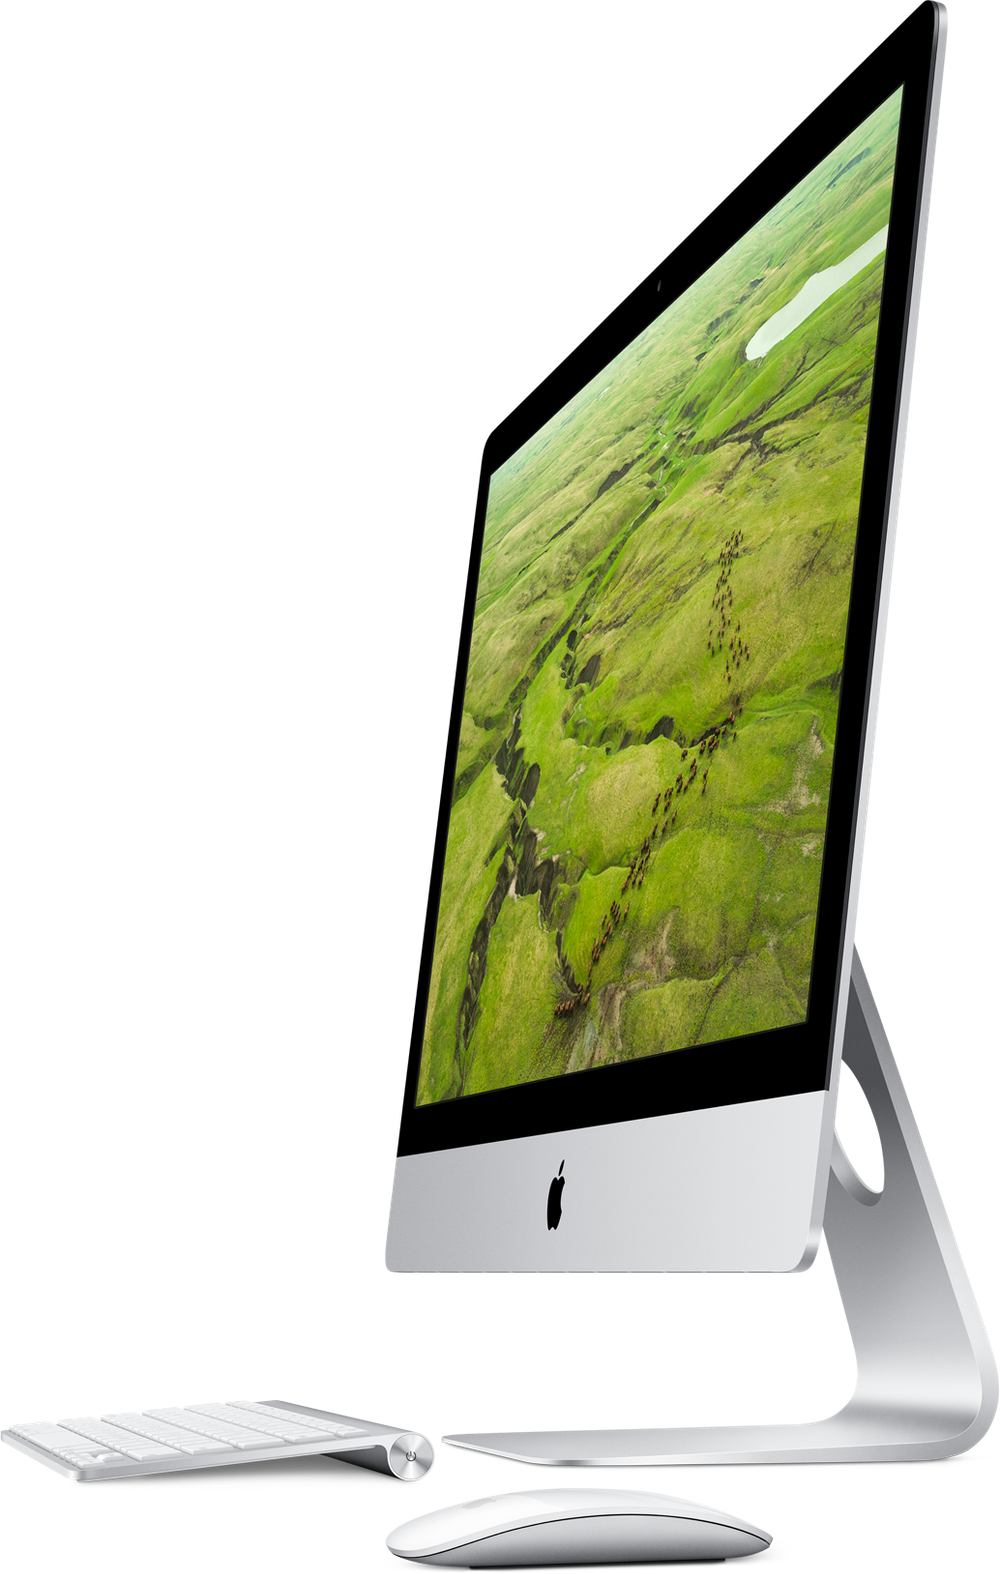 iMac met Retina 5K-display: een geweldig Retina scherm op de desktop